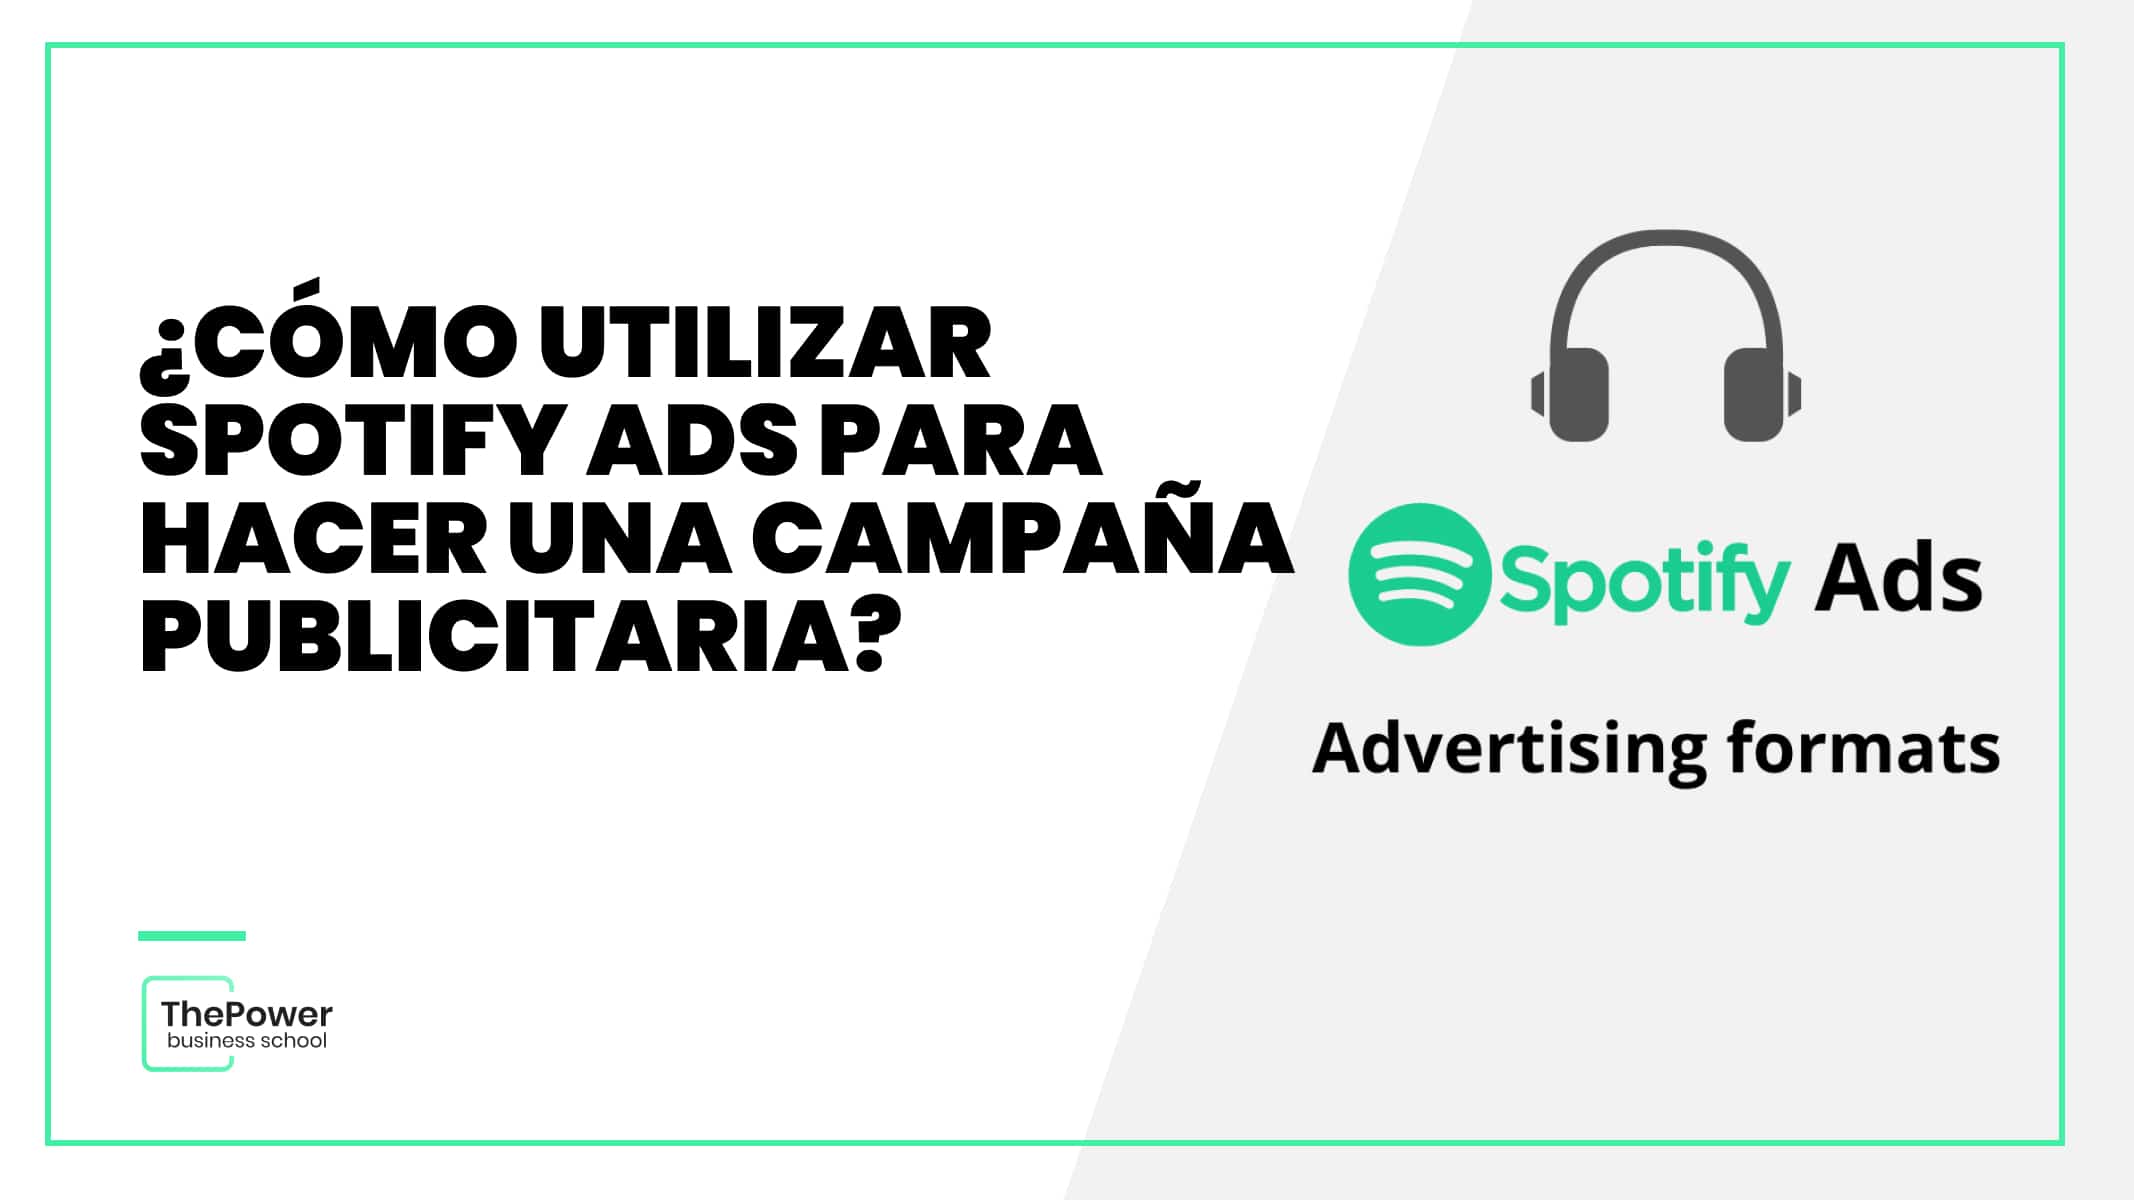 ¿Cómo utilizar Spotify Ads para hacer una campaña publicitaria?